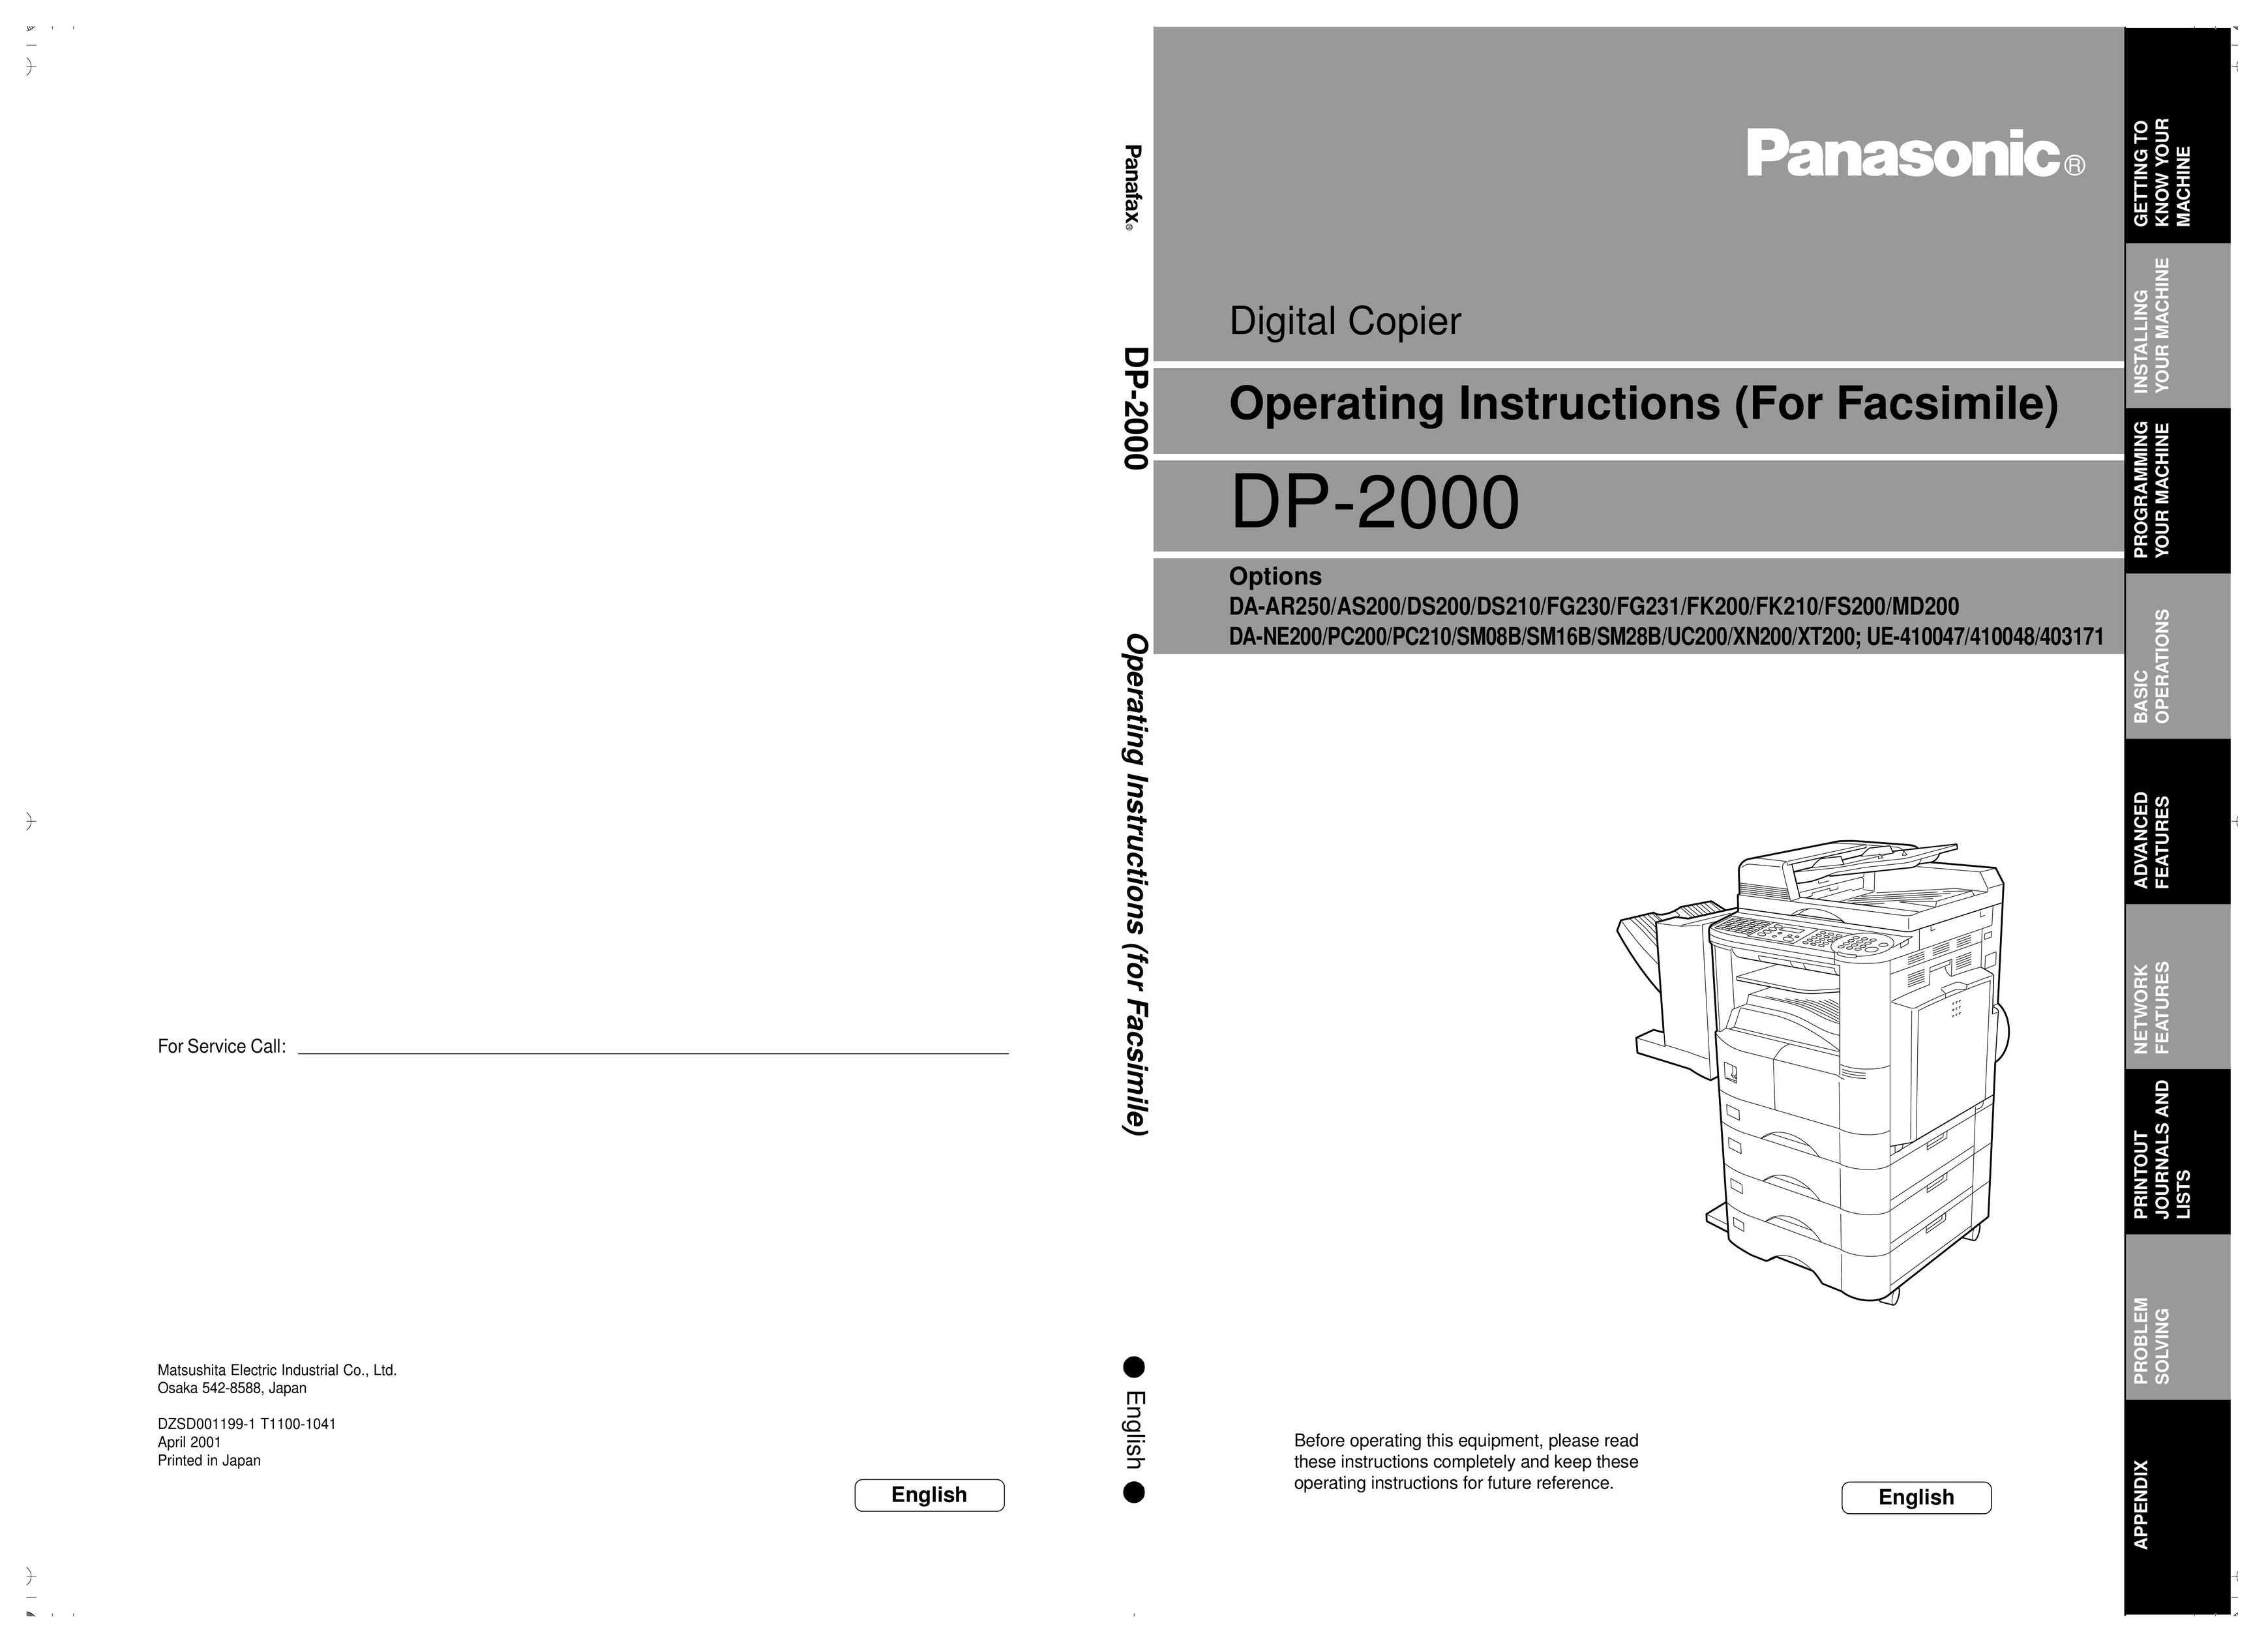 Panasonic 403171 All in One Printer User Manual